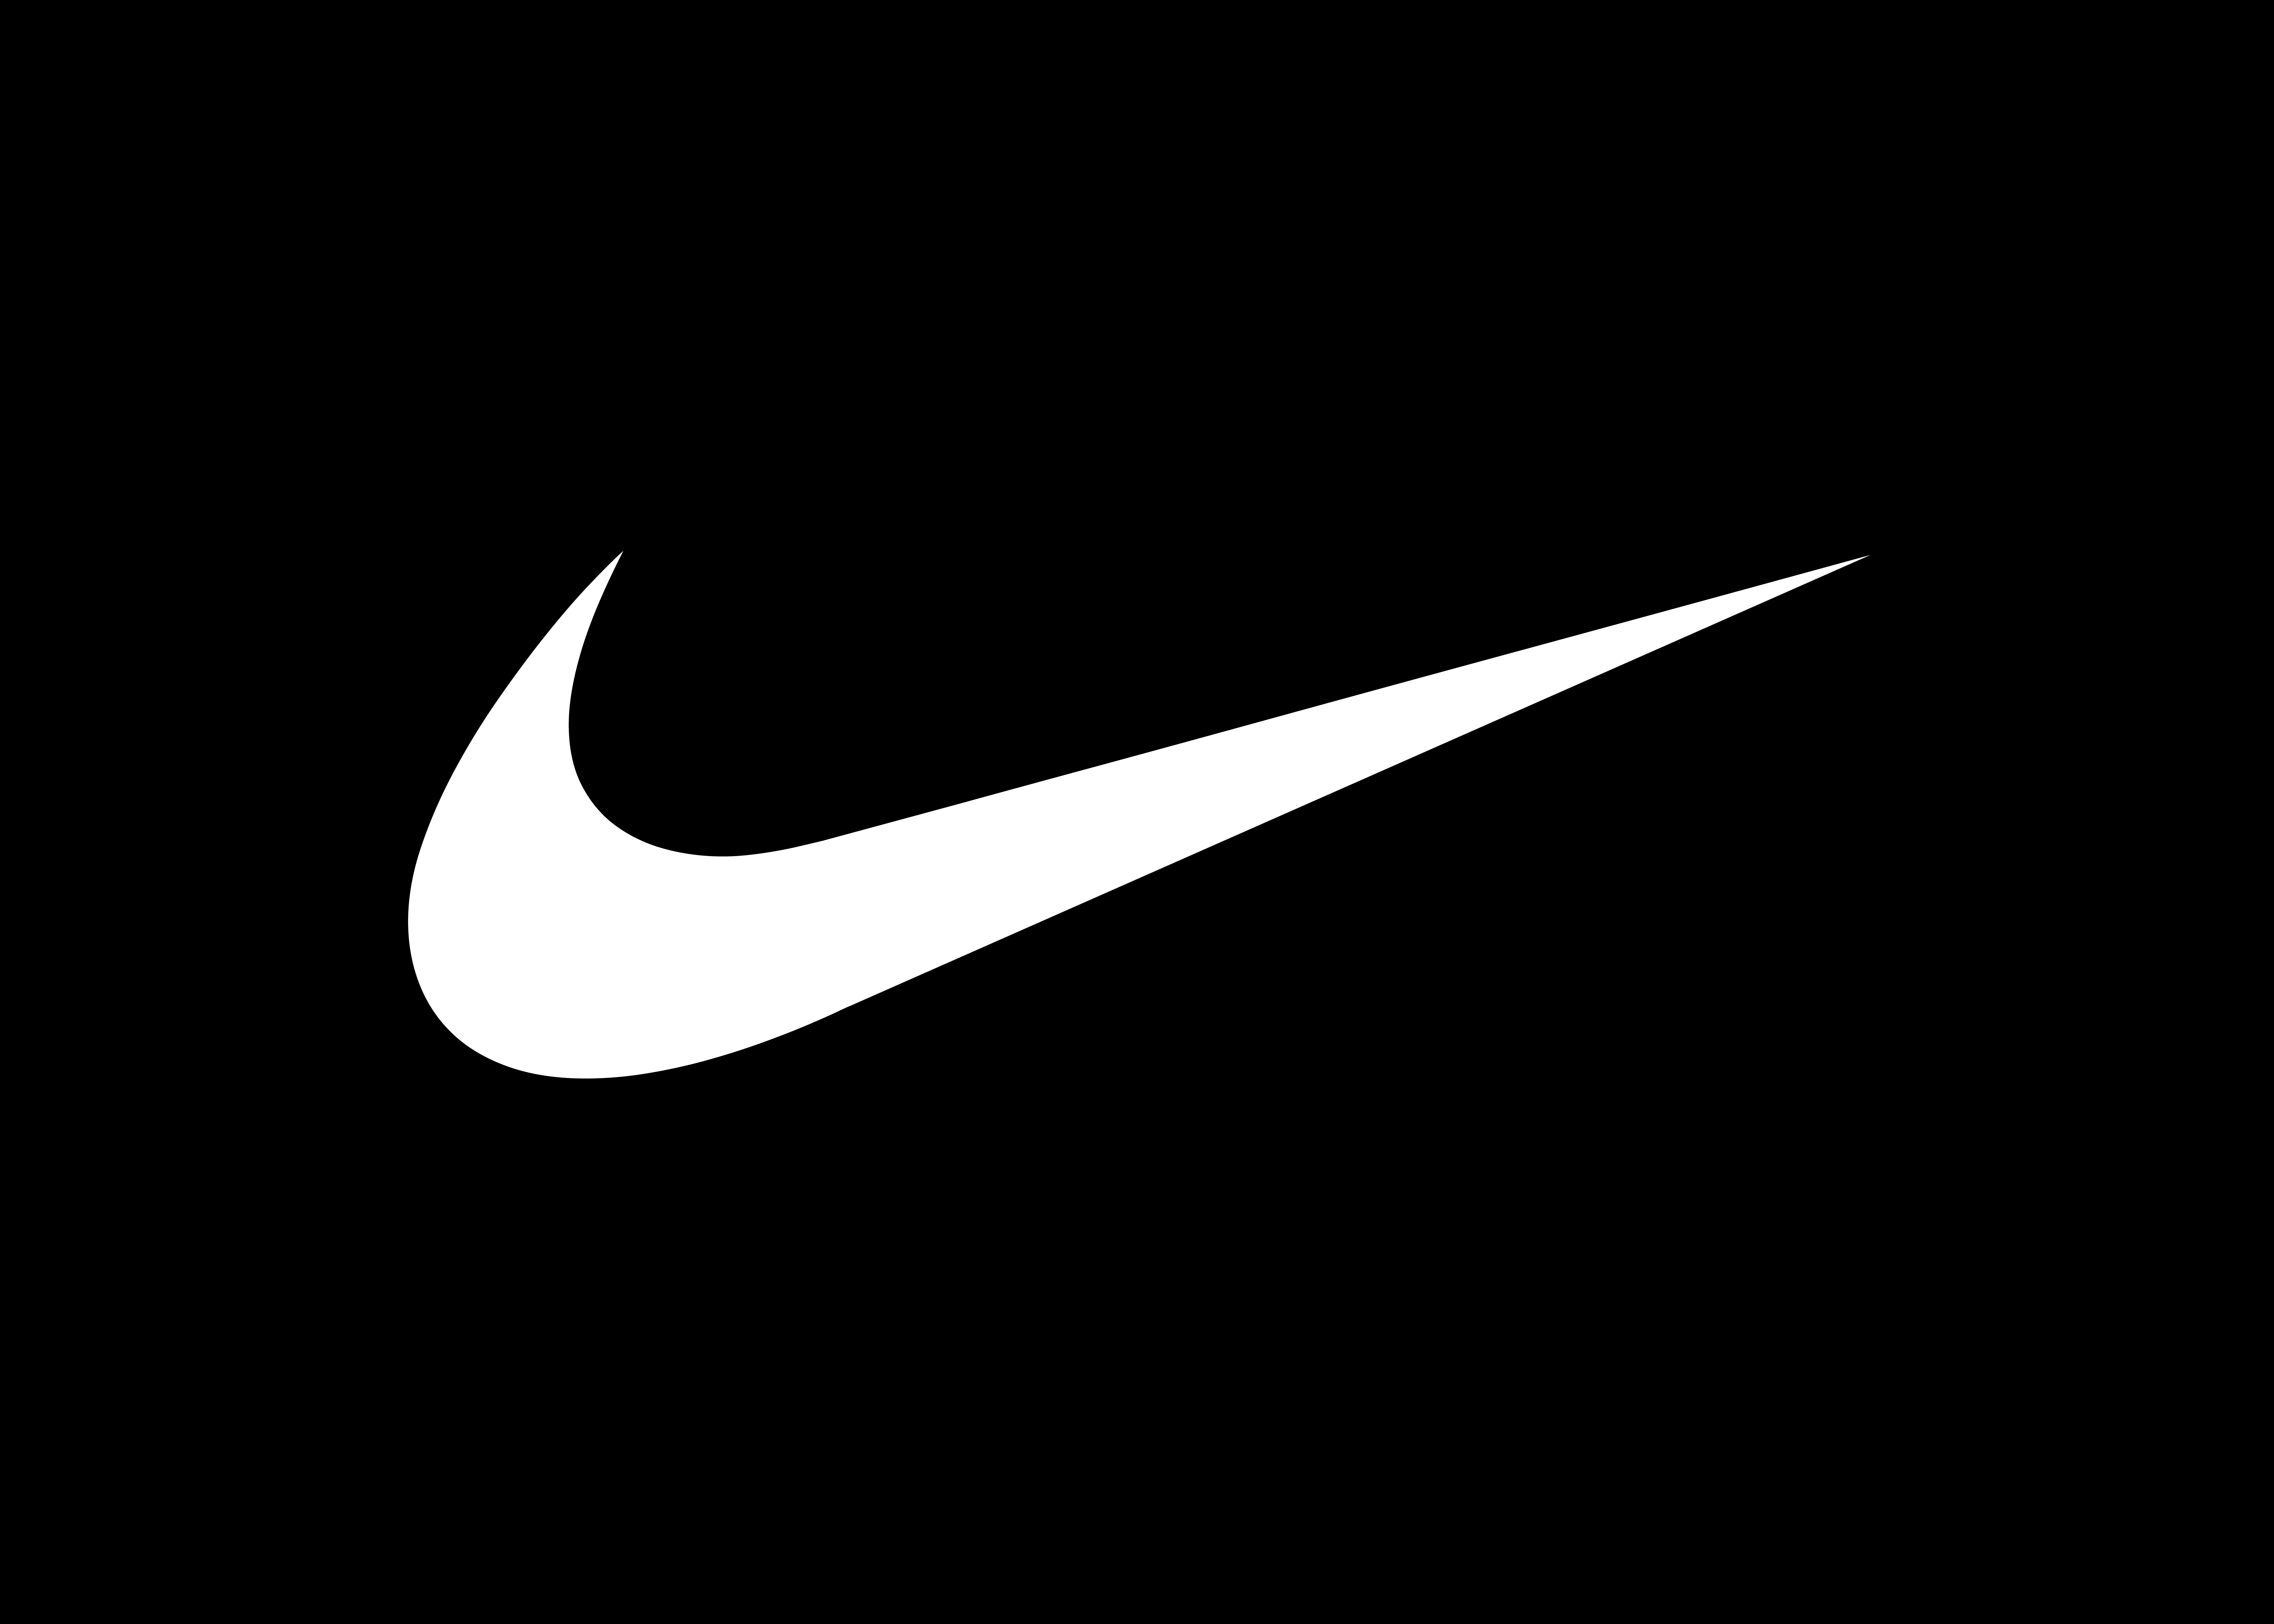 Logo của Nike vô cùng độc đáo và nổi tiếng trên toàn thế giới. Nó biểu tượng cho sự khát khao chiến thắng và thành công trong mọi hoạt động của bạn. Hãy xem hình ảnh liên quan để cảm nhận sự mạnh mẽ và tinh tế của Nike logo.